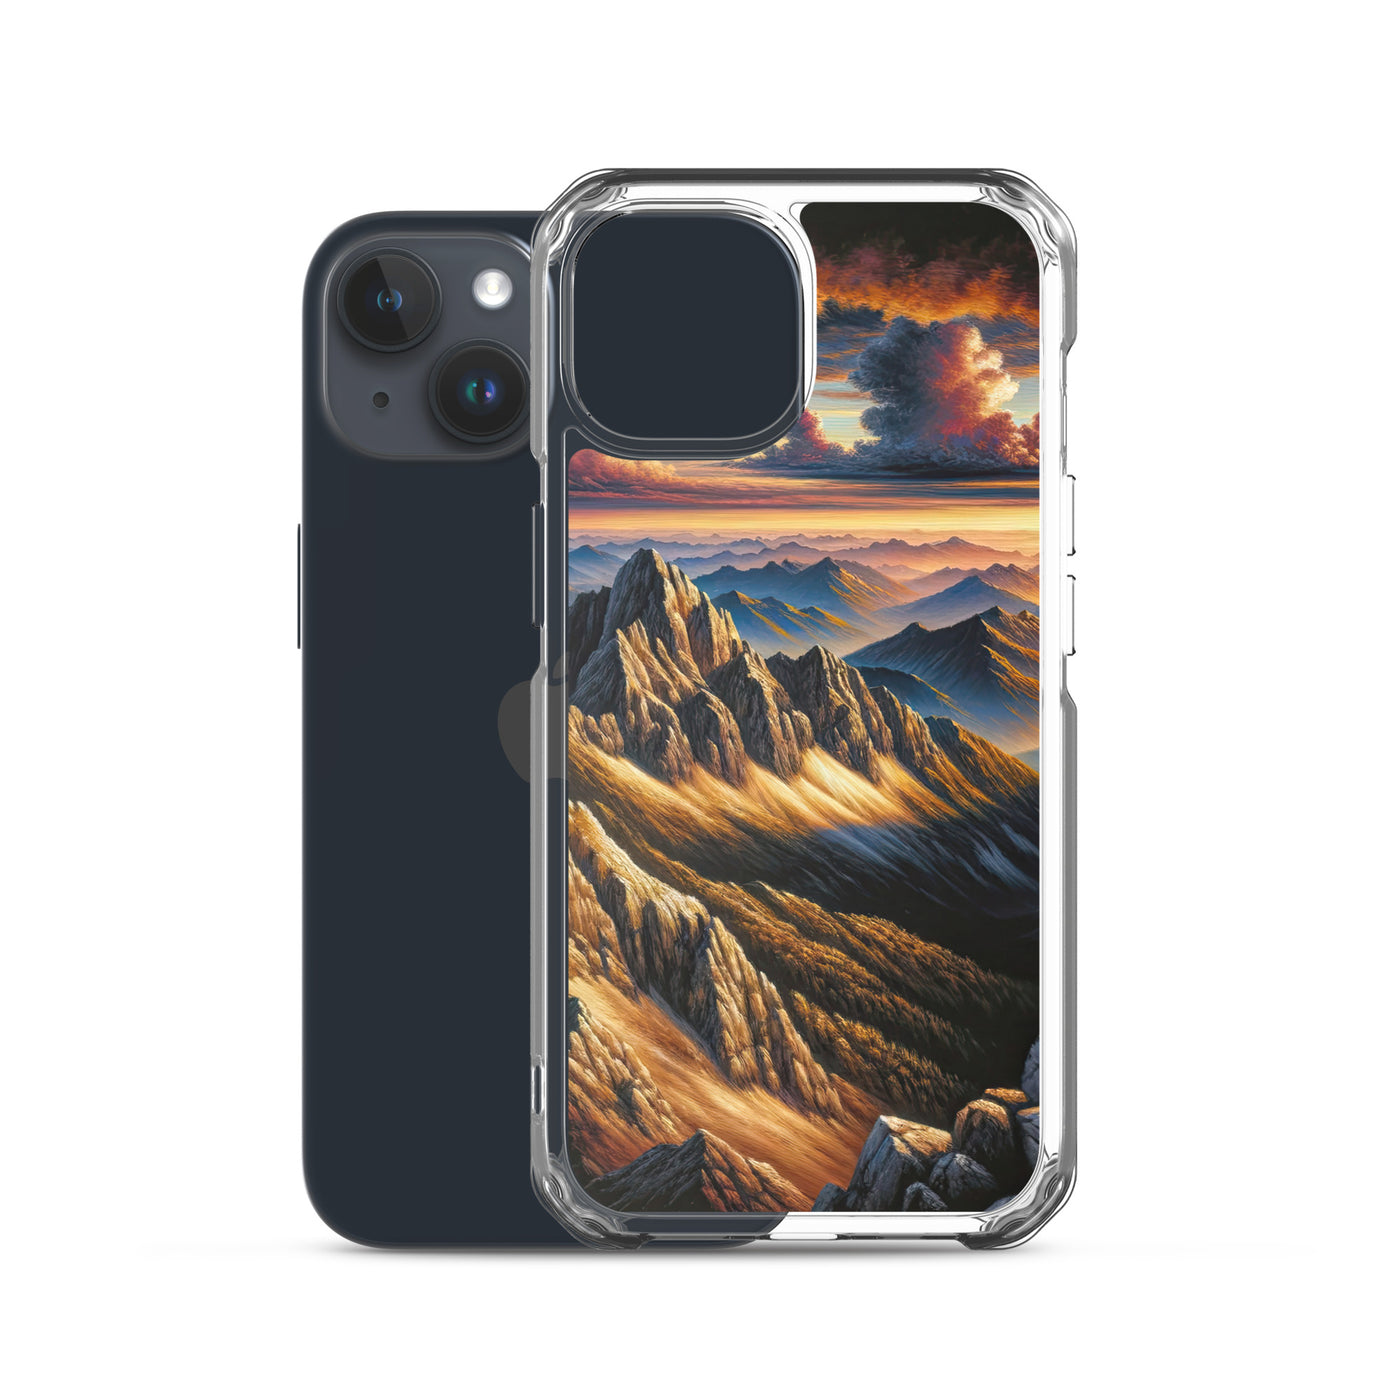 Alpen in Abenddämmerung: Acrylgemälde mit beleuchteten Berggipfeln - iPhone Schutzhülle (durchsichtig) berge xxx yyy zzz